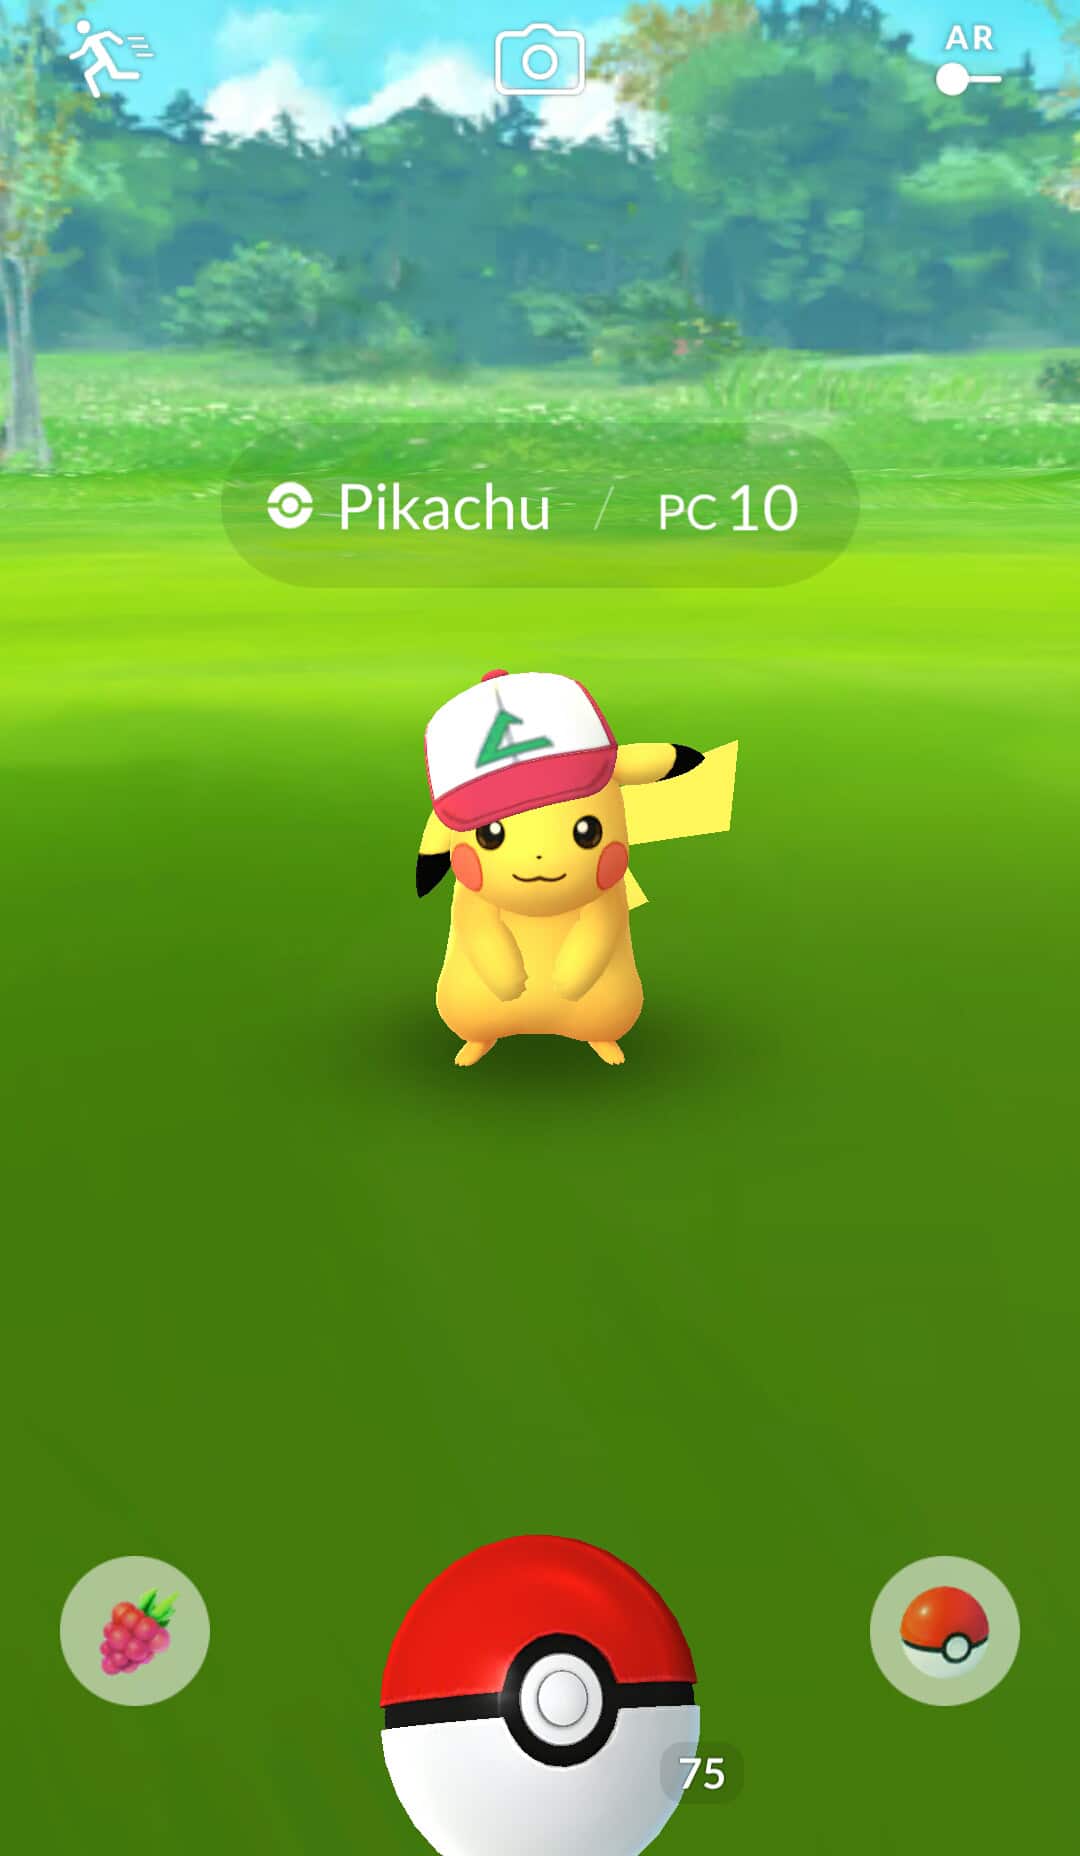 pokemongo pikachuash01